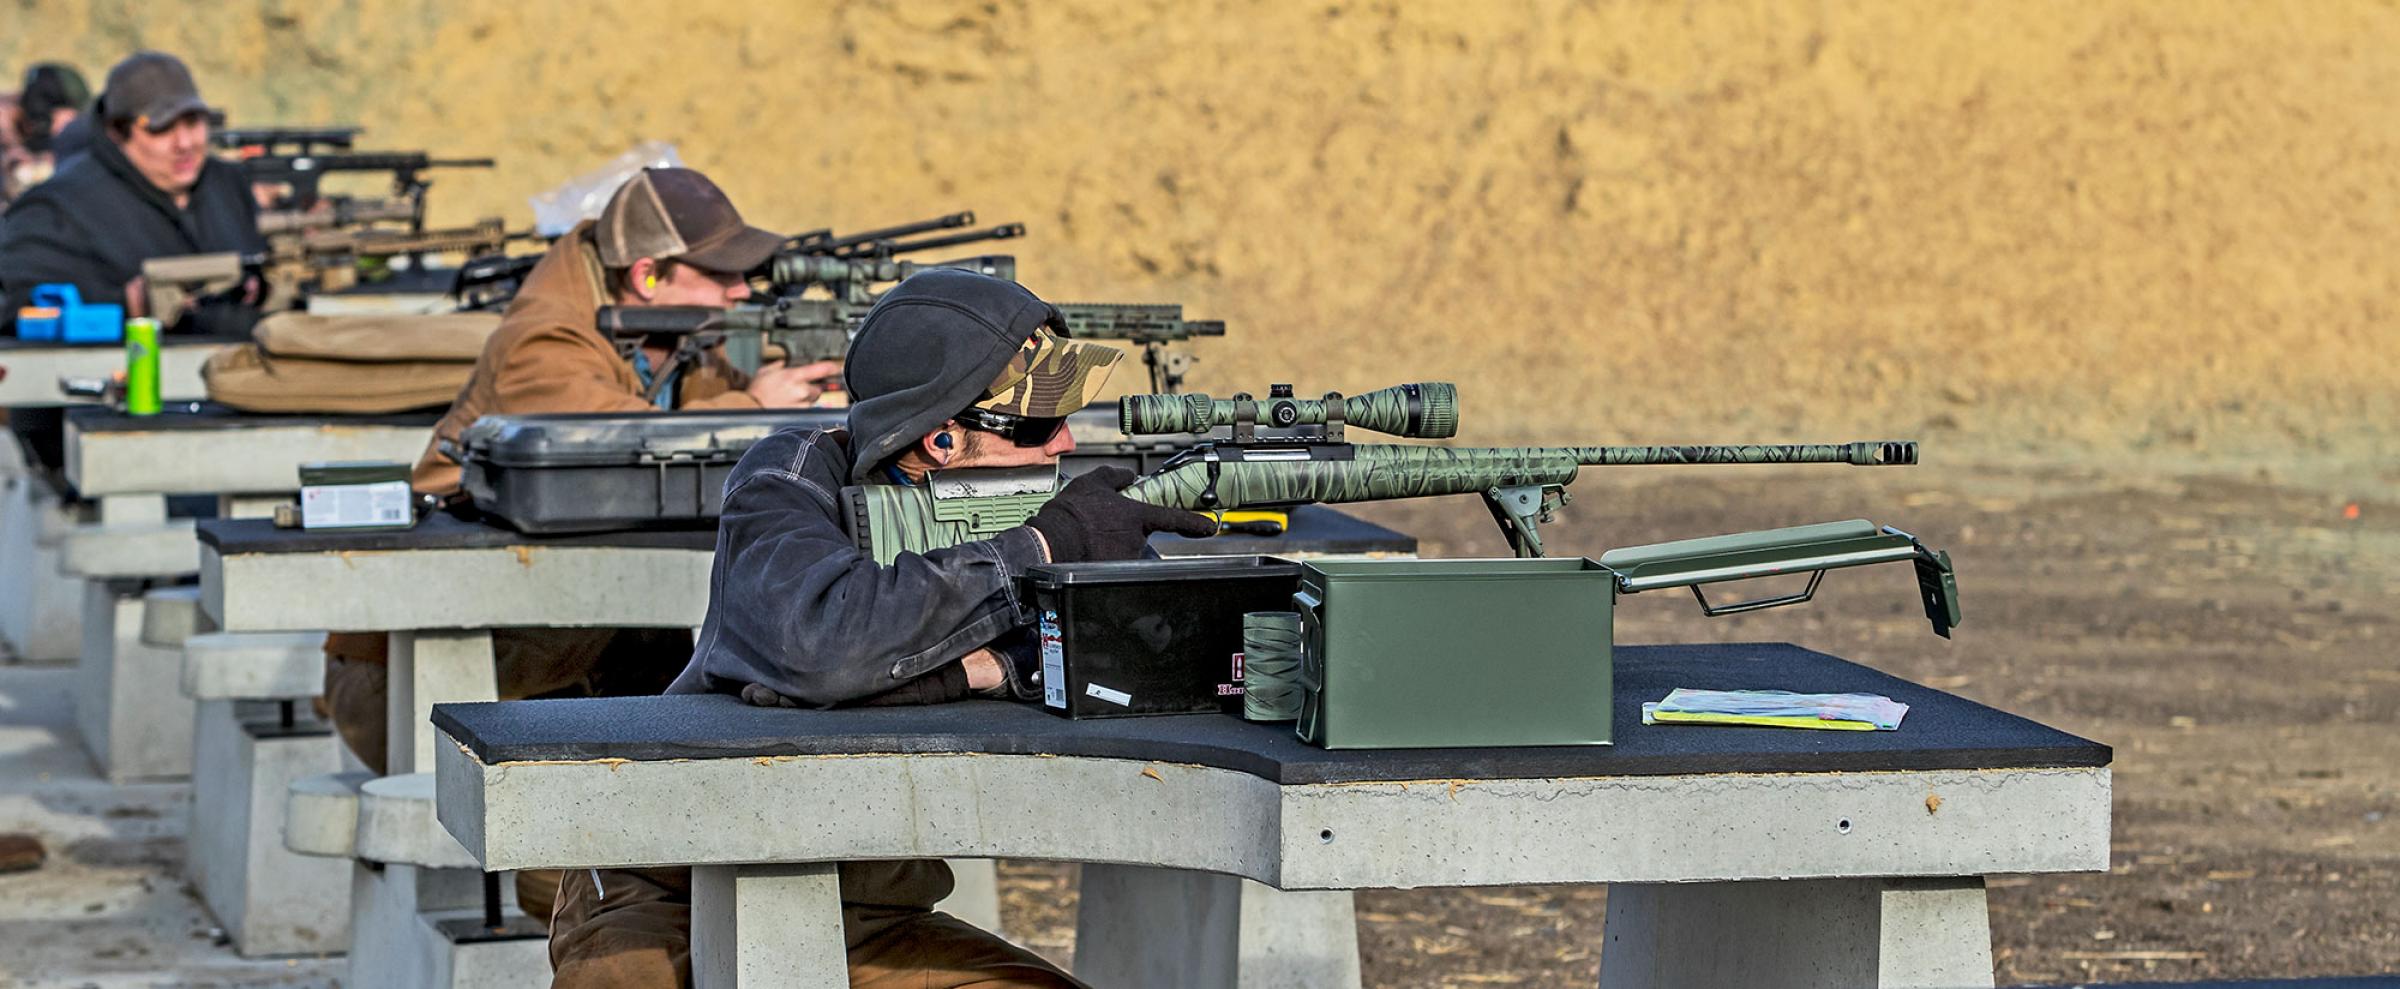 Target practicing at a gun range